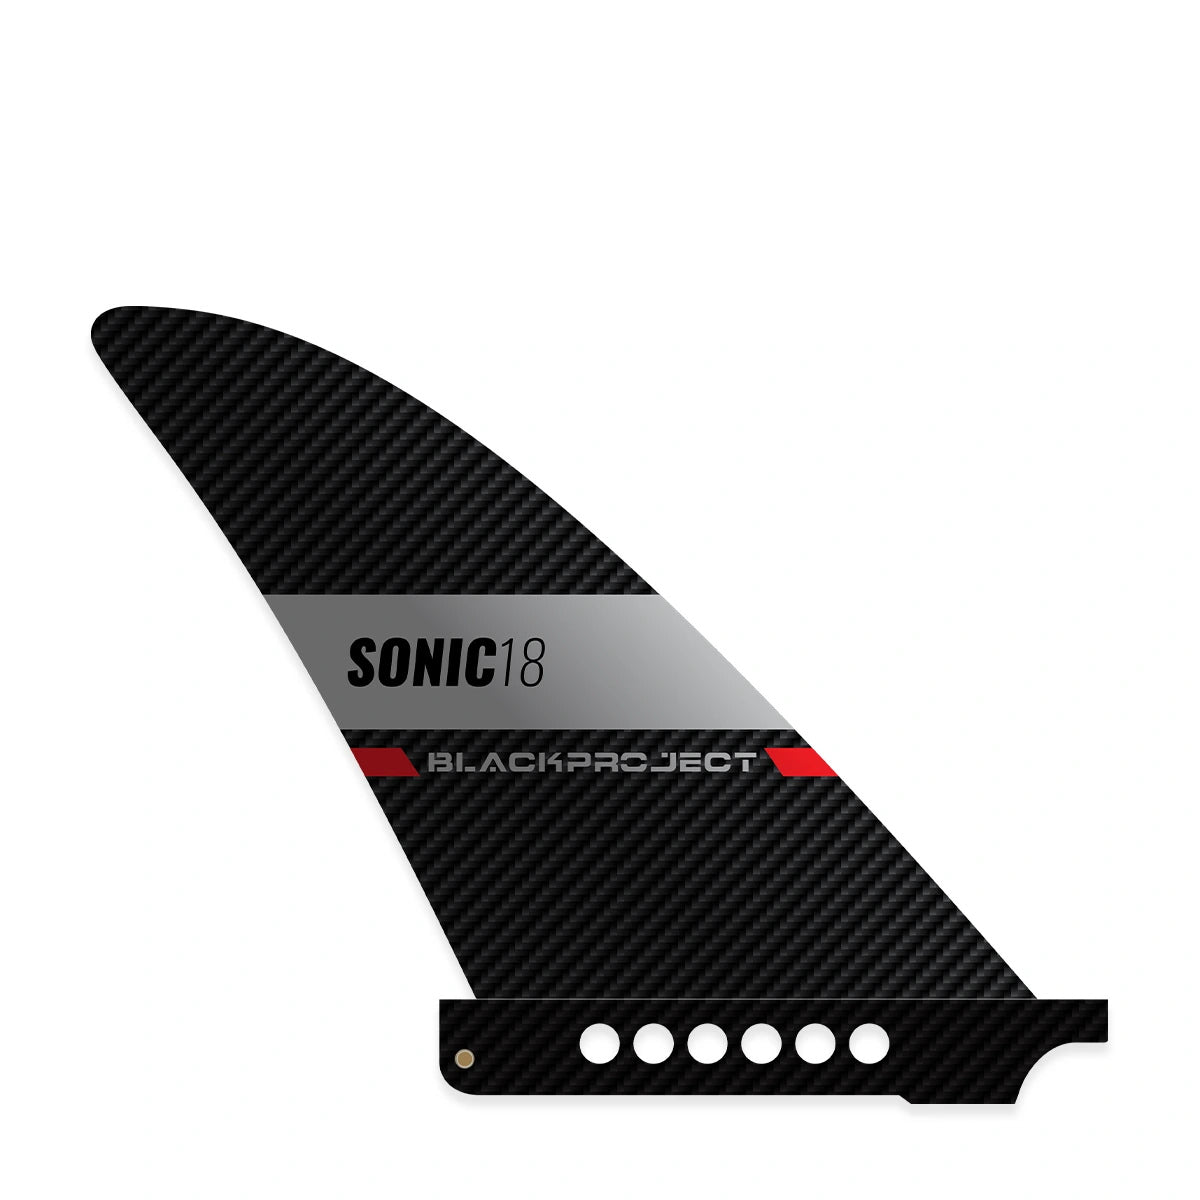 Rechte Seite der SUP Finne Black Project Sonic mit US Box Base.